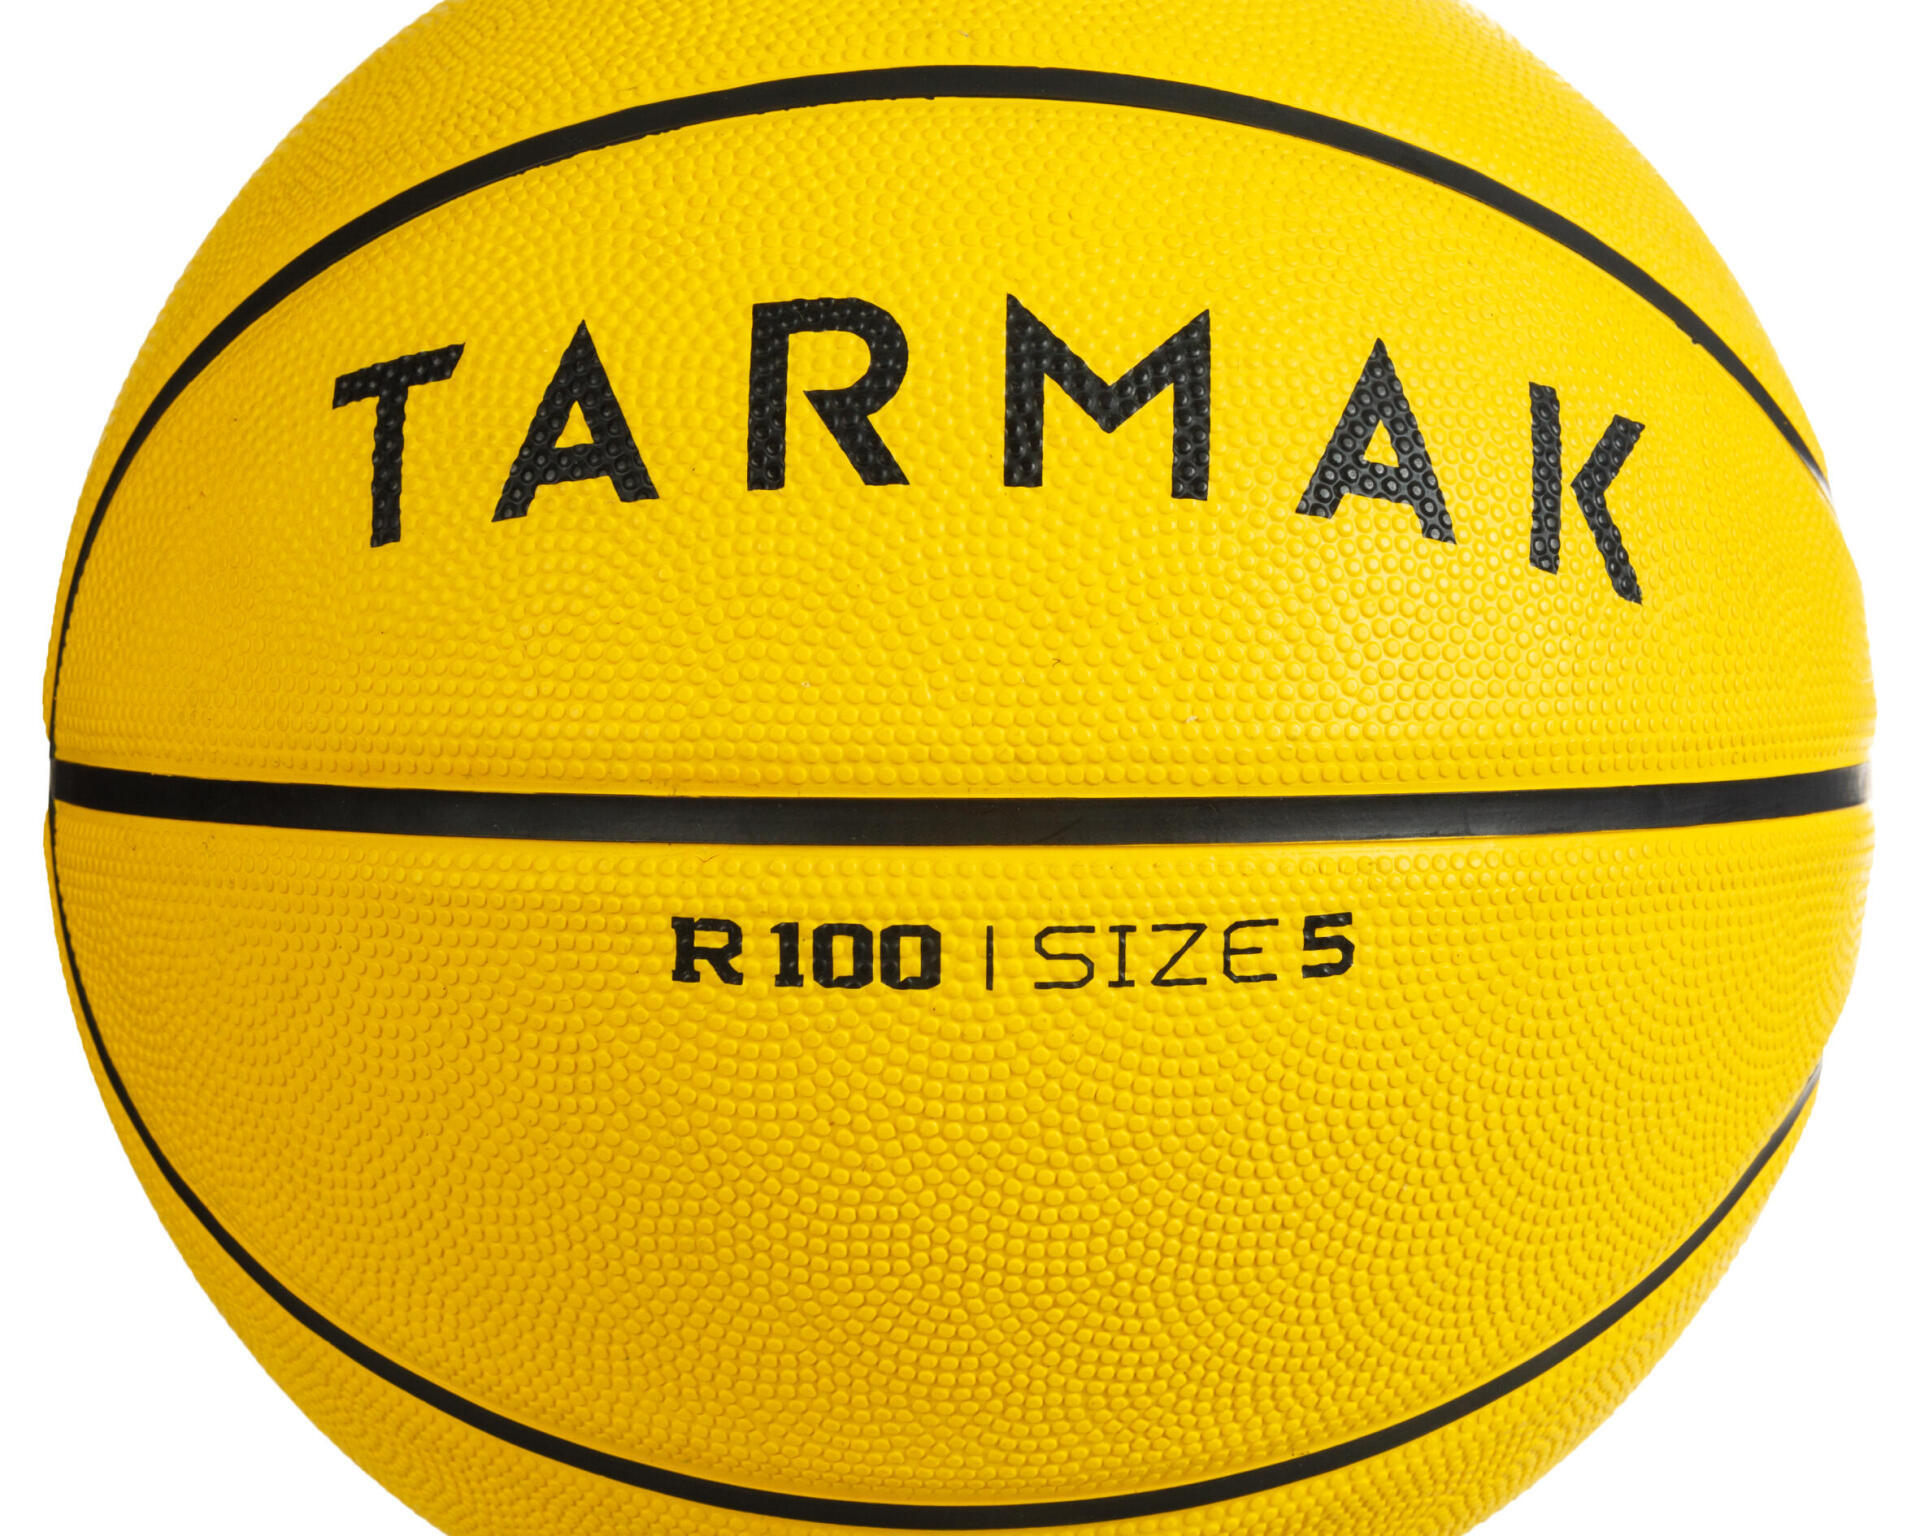 籃球尺寸 5 號球